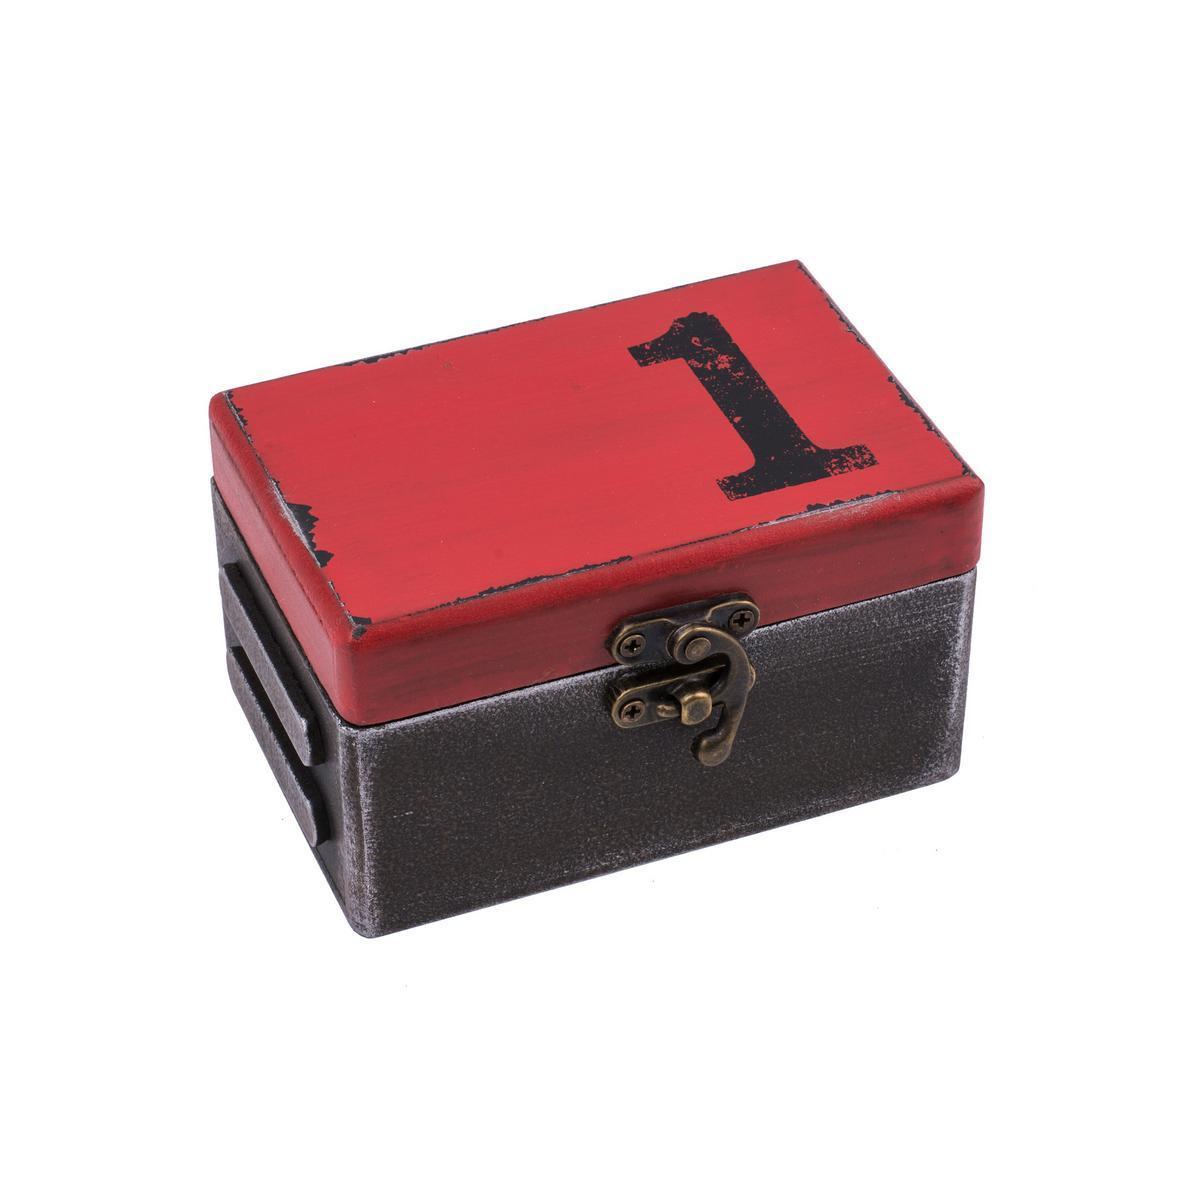 Boîte de rangement Déco Industrielle - Mdf - 12 x 8 x H 6 cm - Noir et rouge